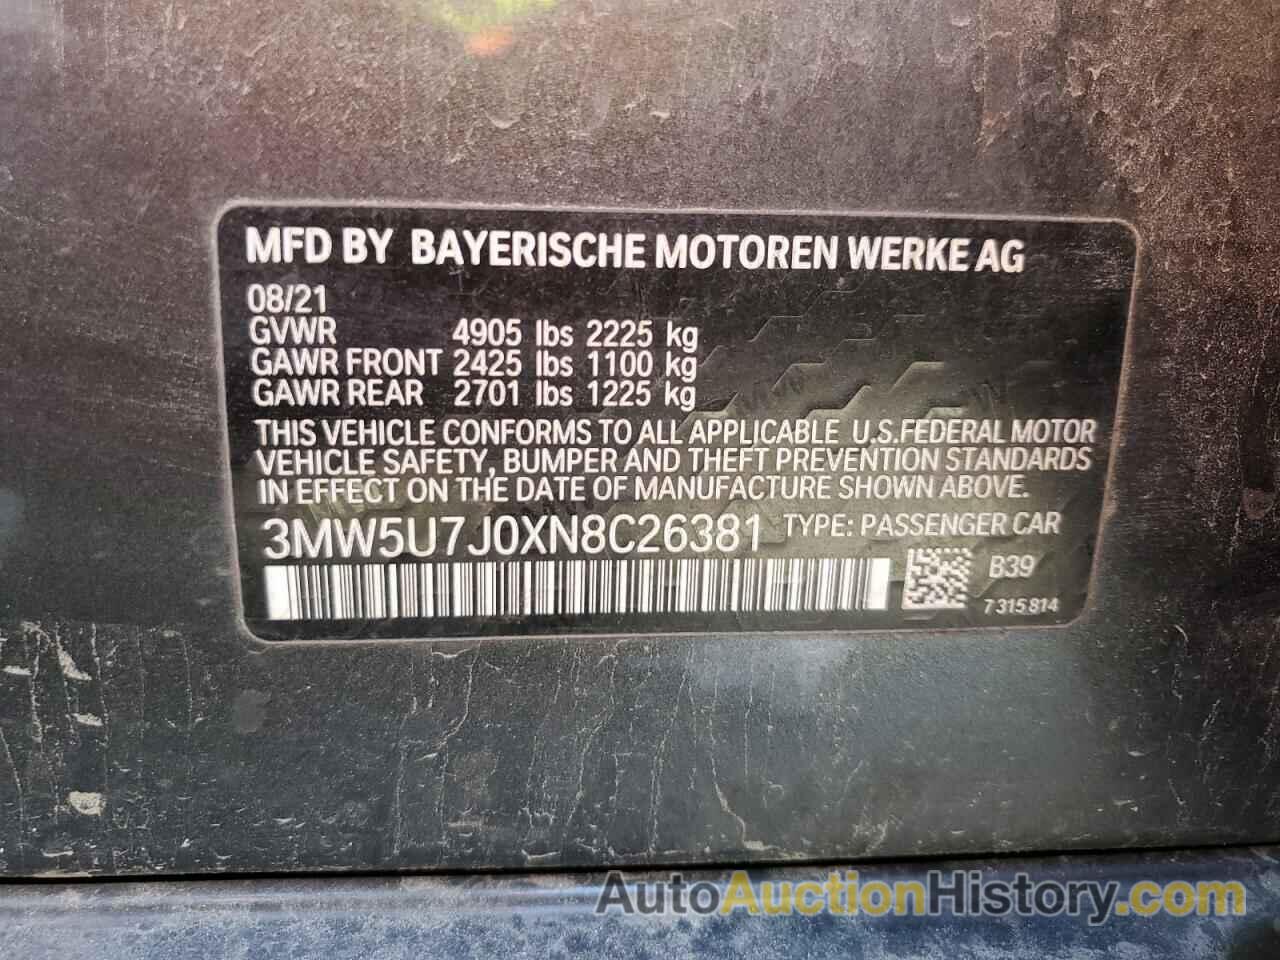 BMW M3, 3MW5U7J0XN8C26381